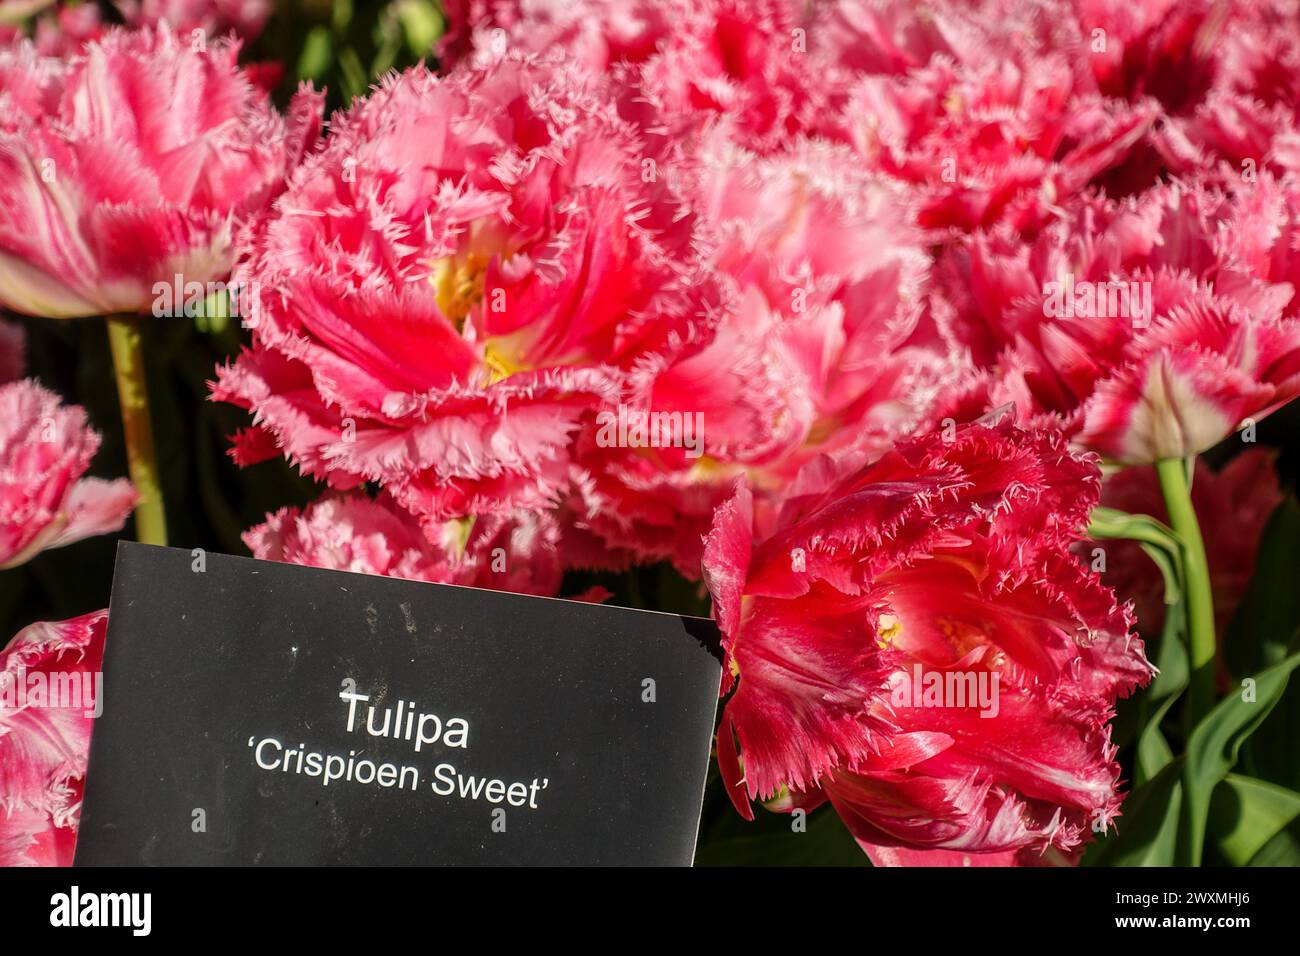 Crispioen Sweet tulipa, rugged tulip variety in the Keukenhof tulip garden, Netherlands Stock Photo